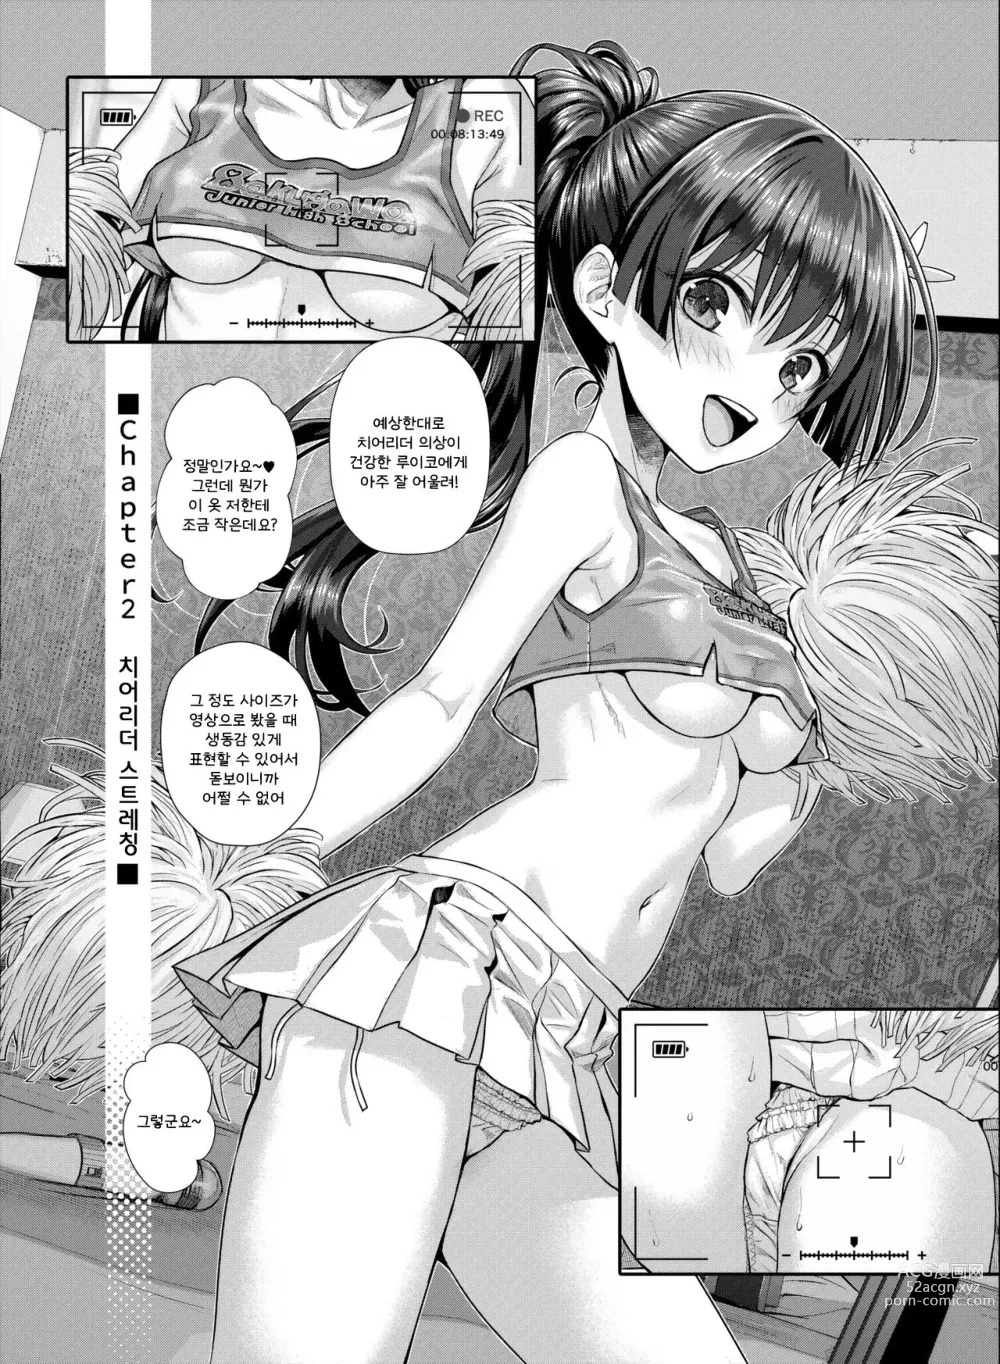 Page 17 of manga Saten-san, Image Video o Toru Natsu